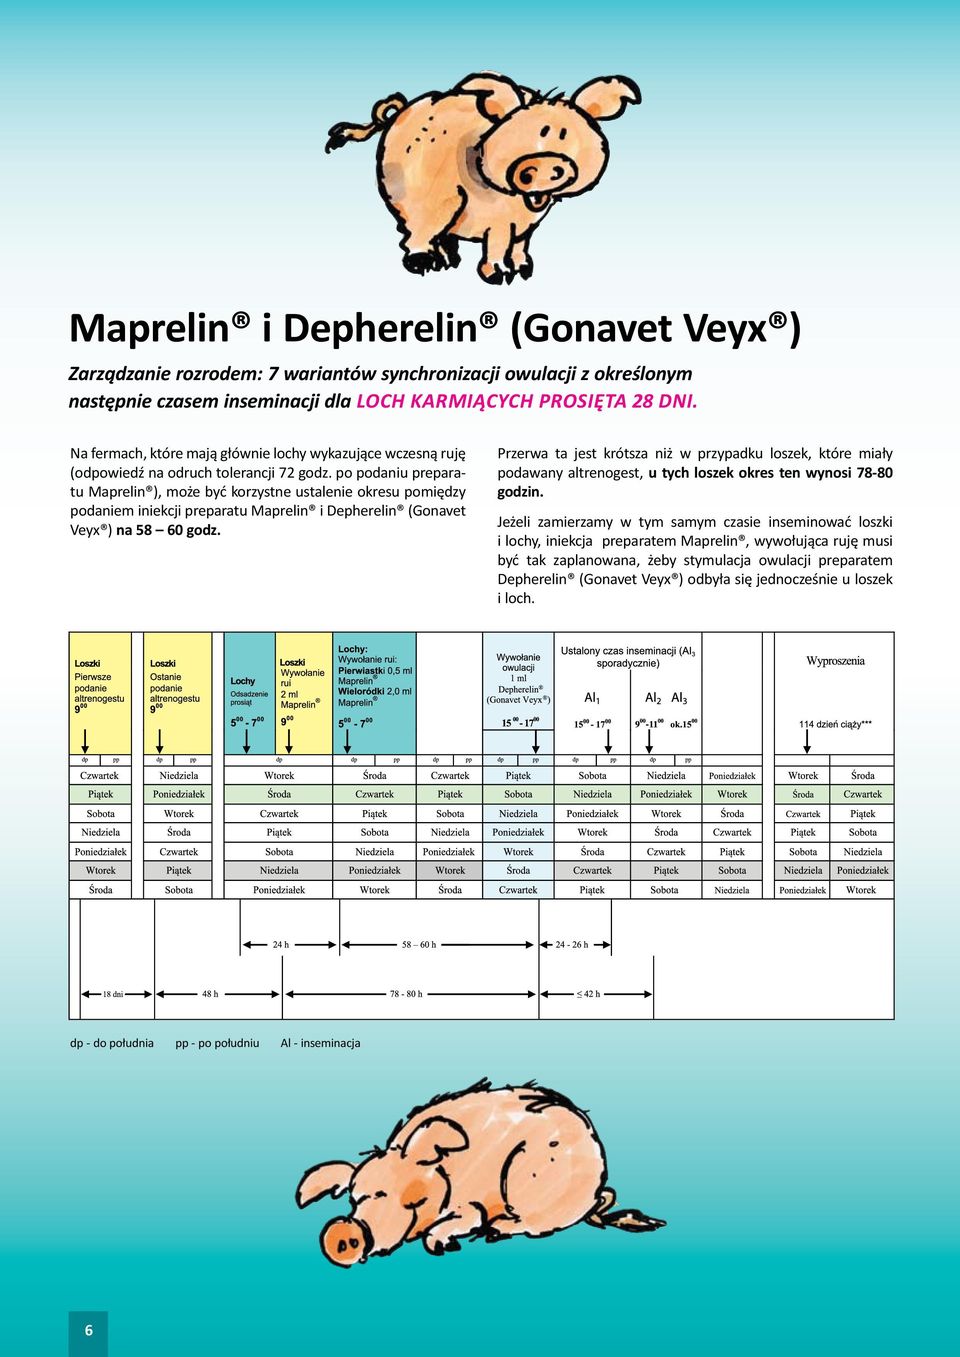 po podaniu preparatu Maprelin ), może być korzystne ustalenie okresu pomiędzy podaniem iniekcji preparatu Maprelin i Depherelin (Gonavet Veyx ) na 58 60 godz.